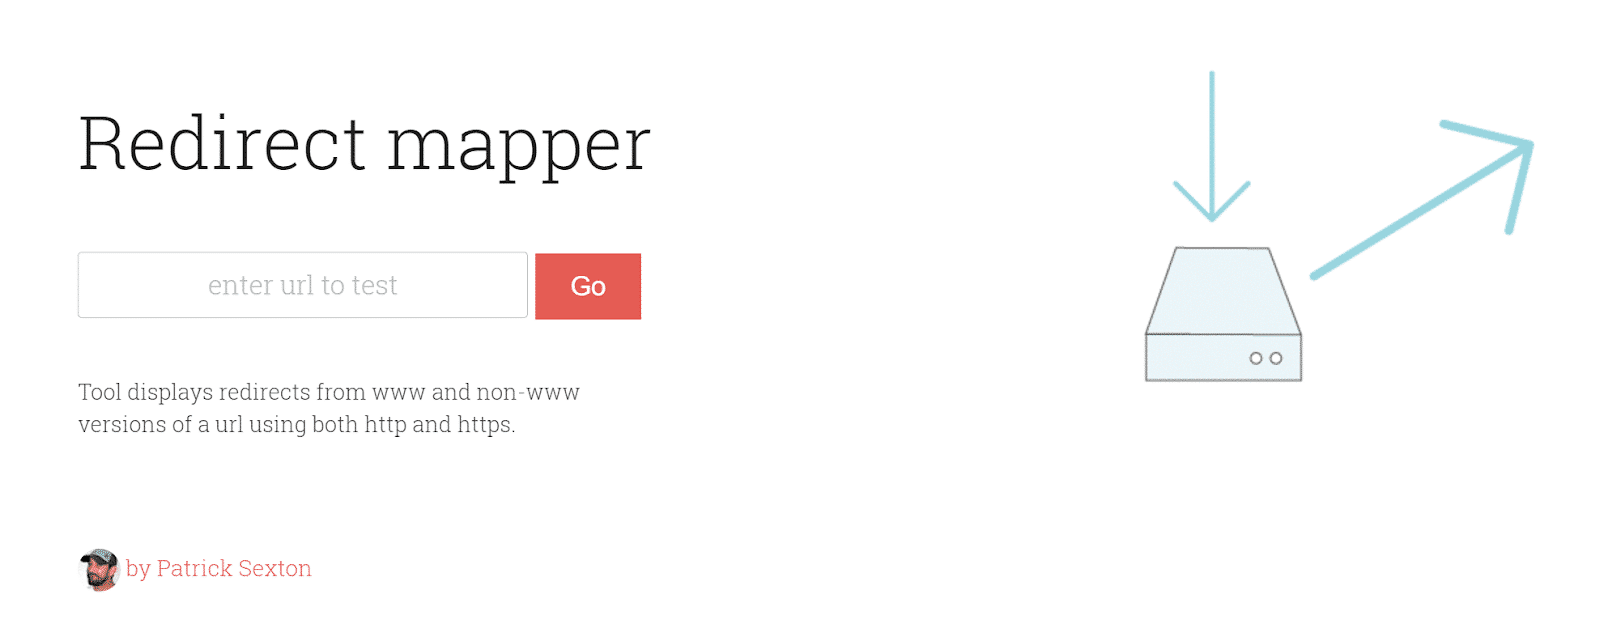 Redirect mapper-verktyg